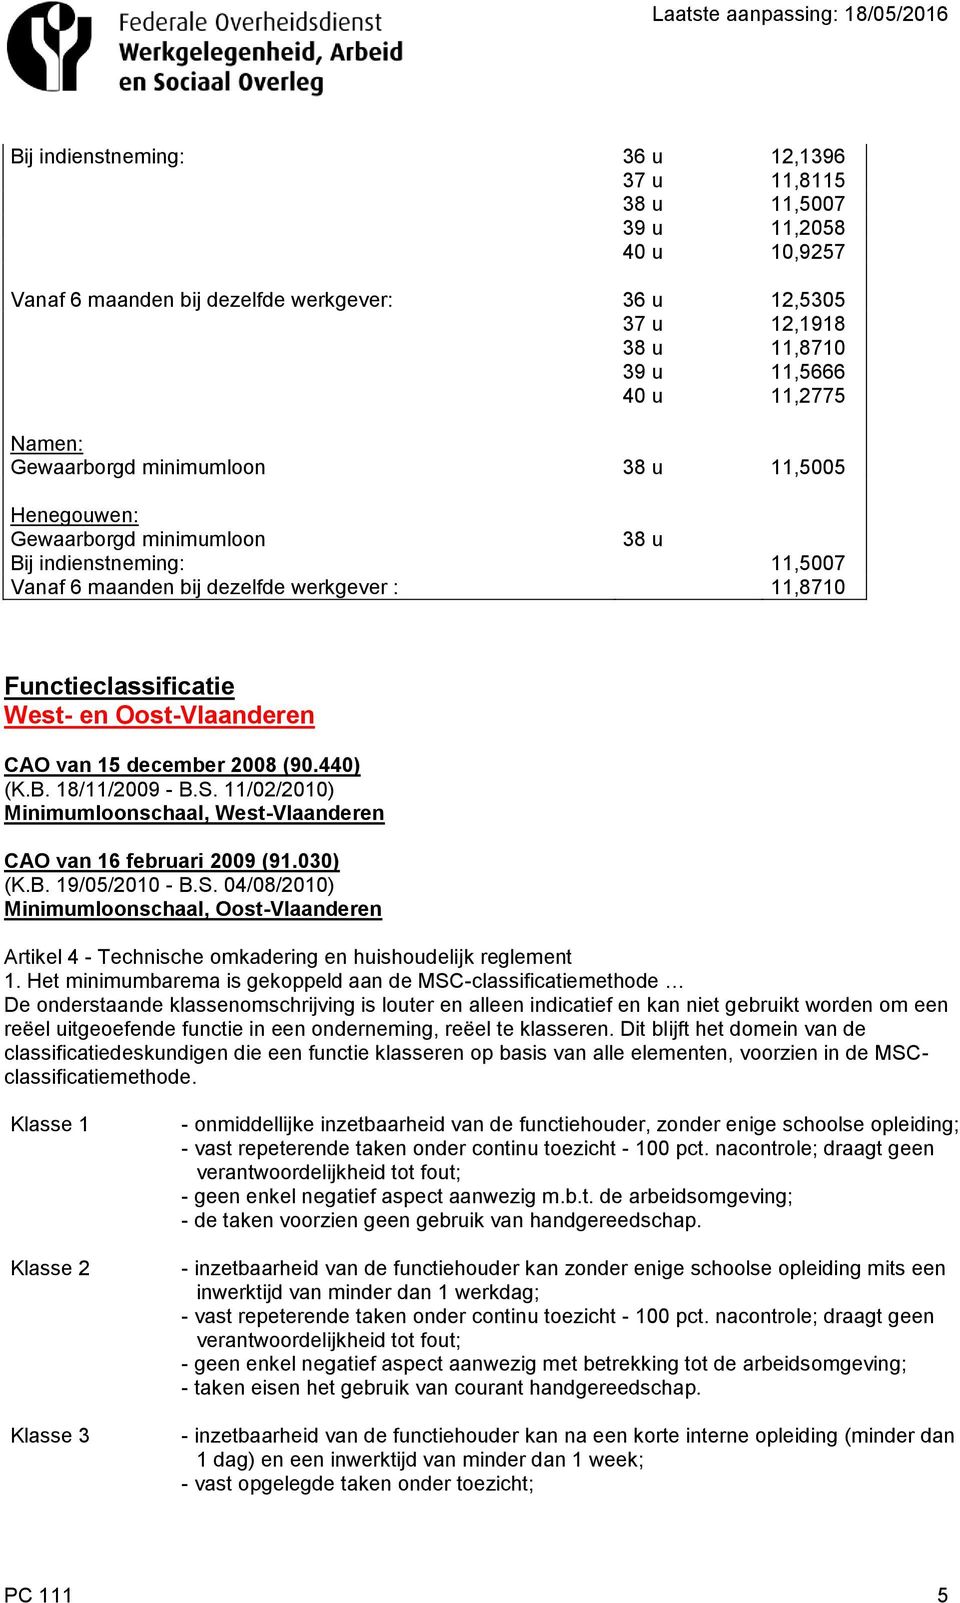 Oost-Vlaanderen CAO van 15 december 2008 (90.440) (K.B. 18/11/2009 - B.S. 11/02/2010) Minimumloonschaal, West-Vlaanderen CAO van 16 februari 2009 (91.030) (K.B. 19/05/2010 - B.S. 04/08/2010) Minimumloonschaal, Oost-Vlaanderen Artikel 4 - Technische omkadering en huishoudelijk reglement 1.